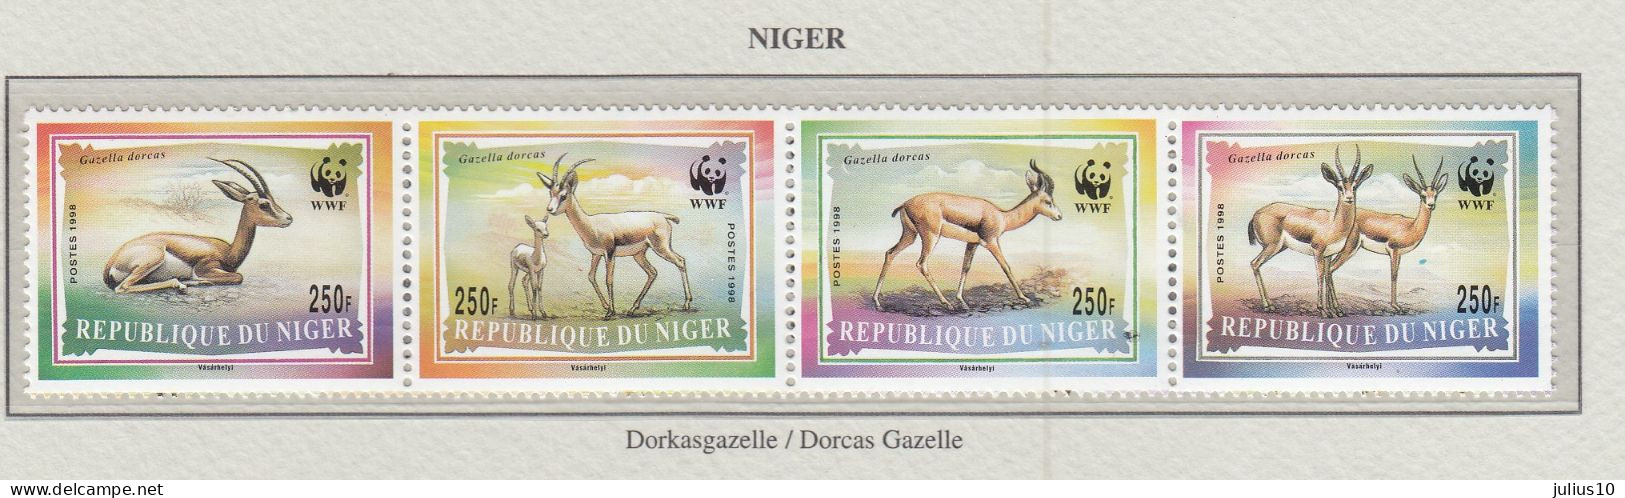 NIGER 1998 WWF Animals Dorcas Gazelle  MiNr. 1460 - 1463 MNH(**) Fauna 594 - Ungebraucht